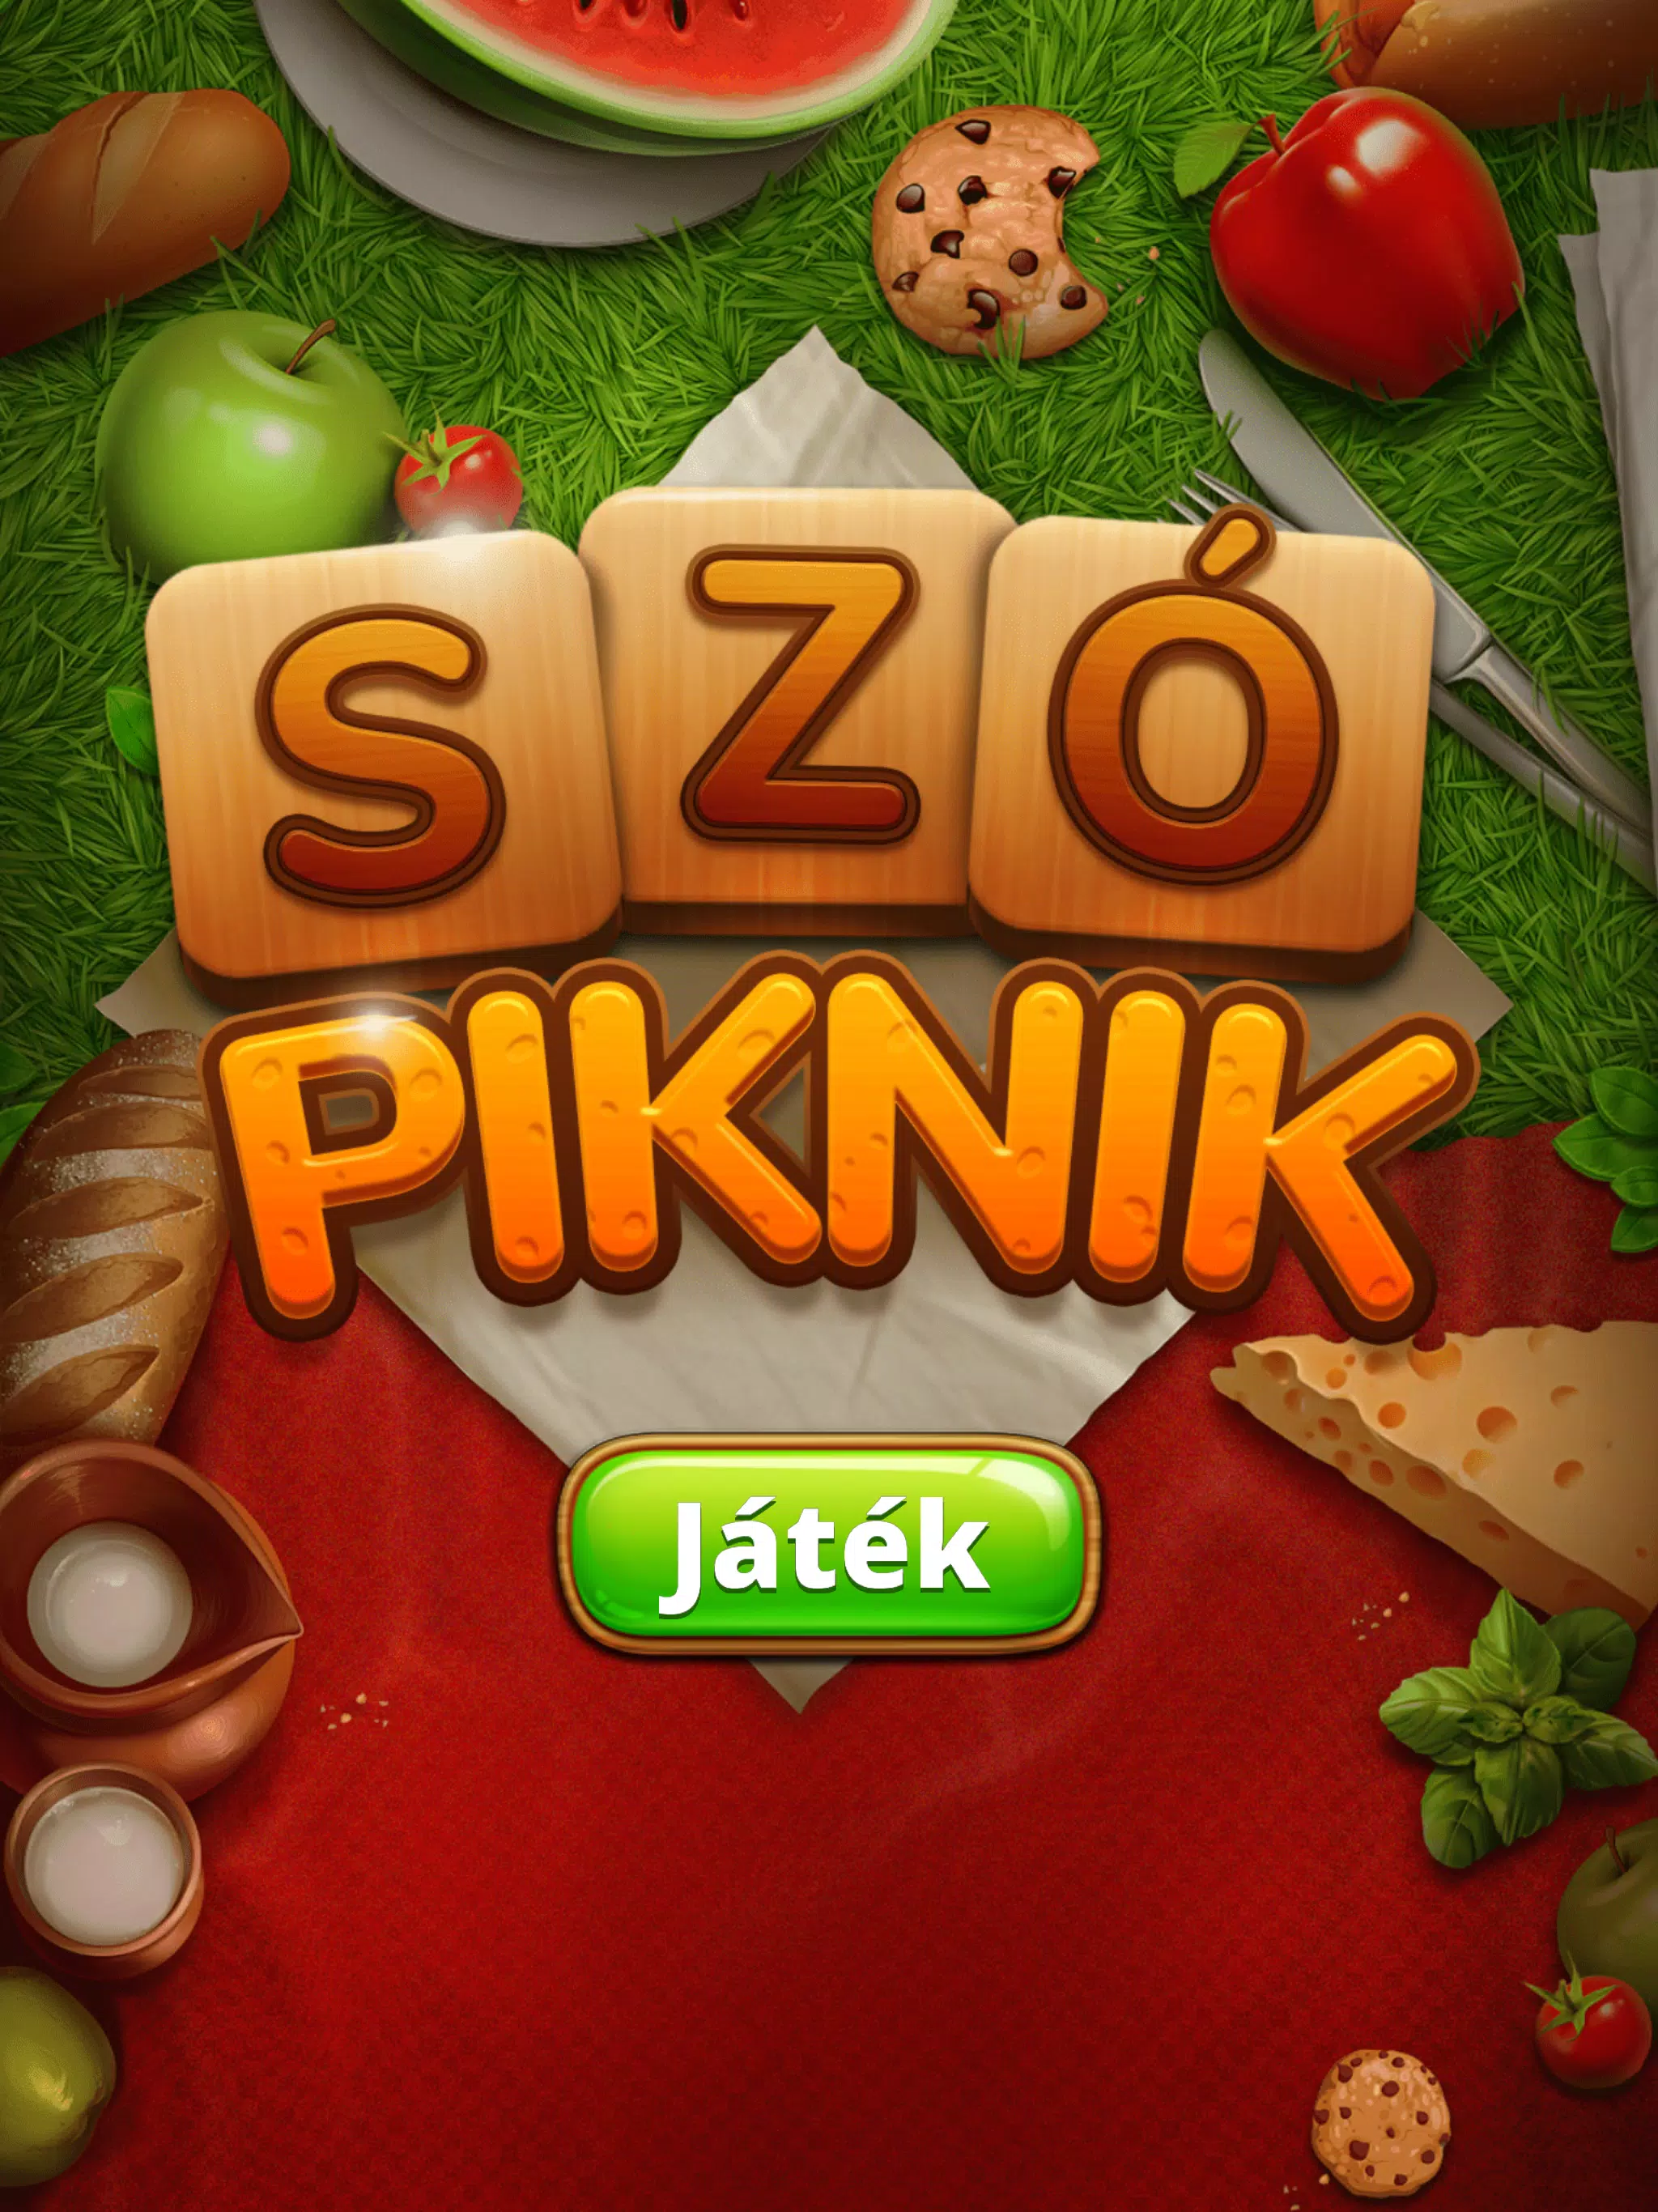 Szó Piknik - Szójáték APK for Android Download